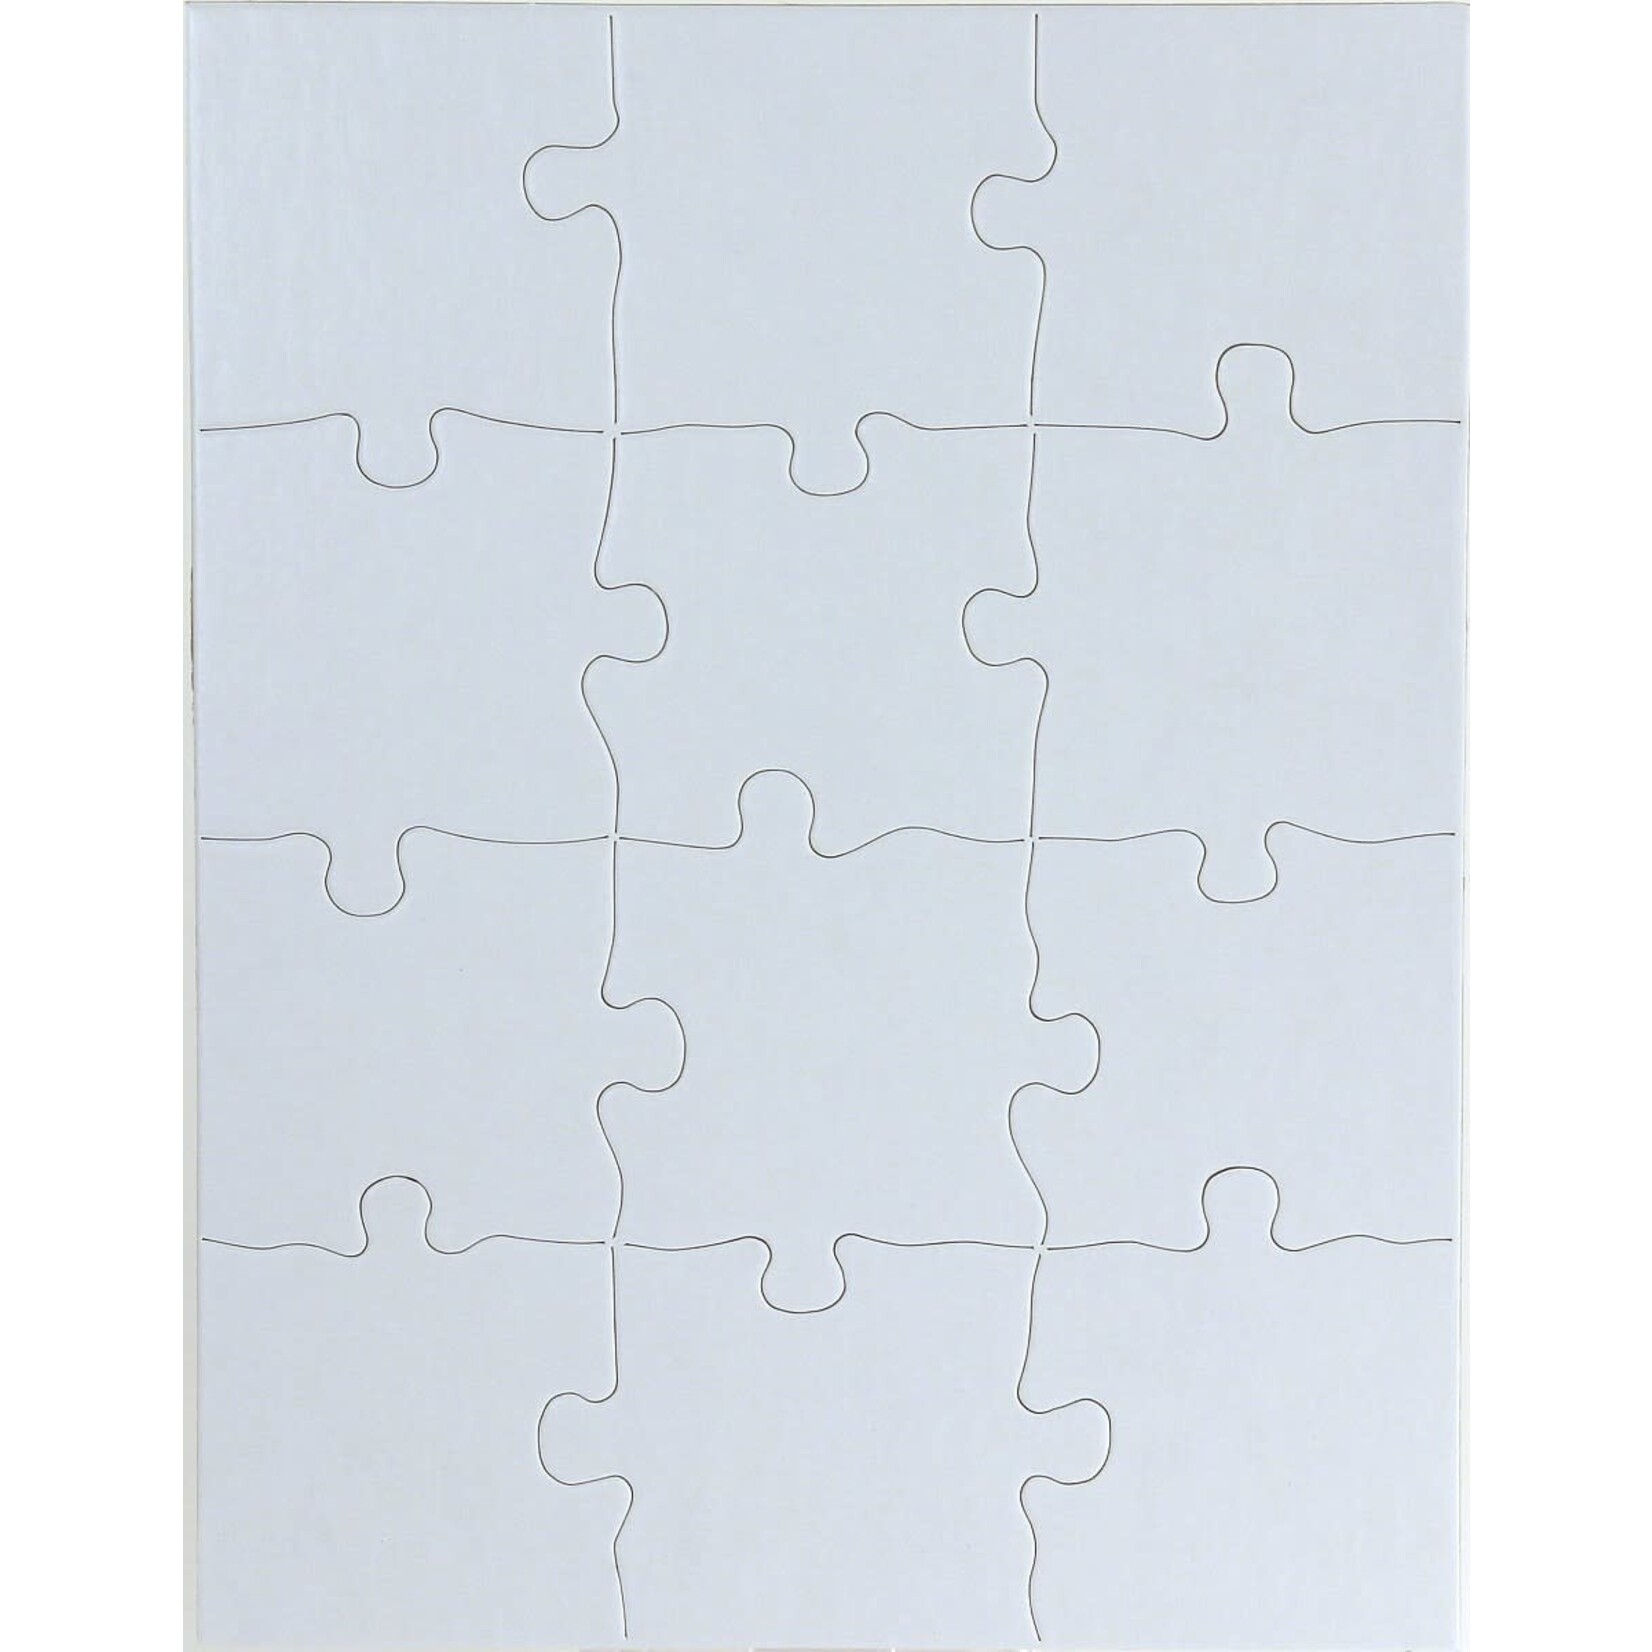 Puzzle - 8.5" x 11" Rectangle, 12 pcs